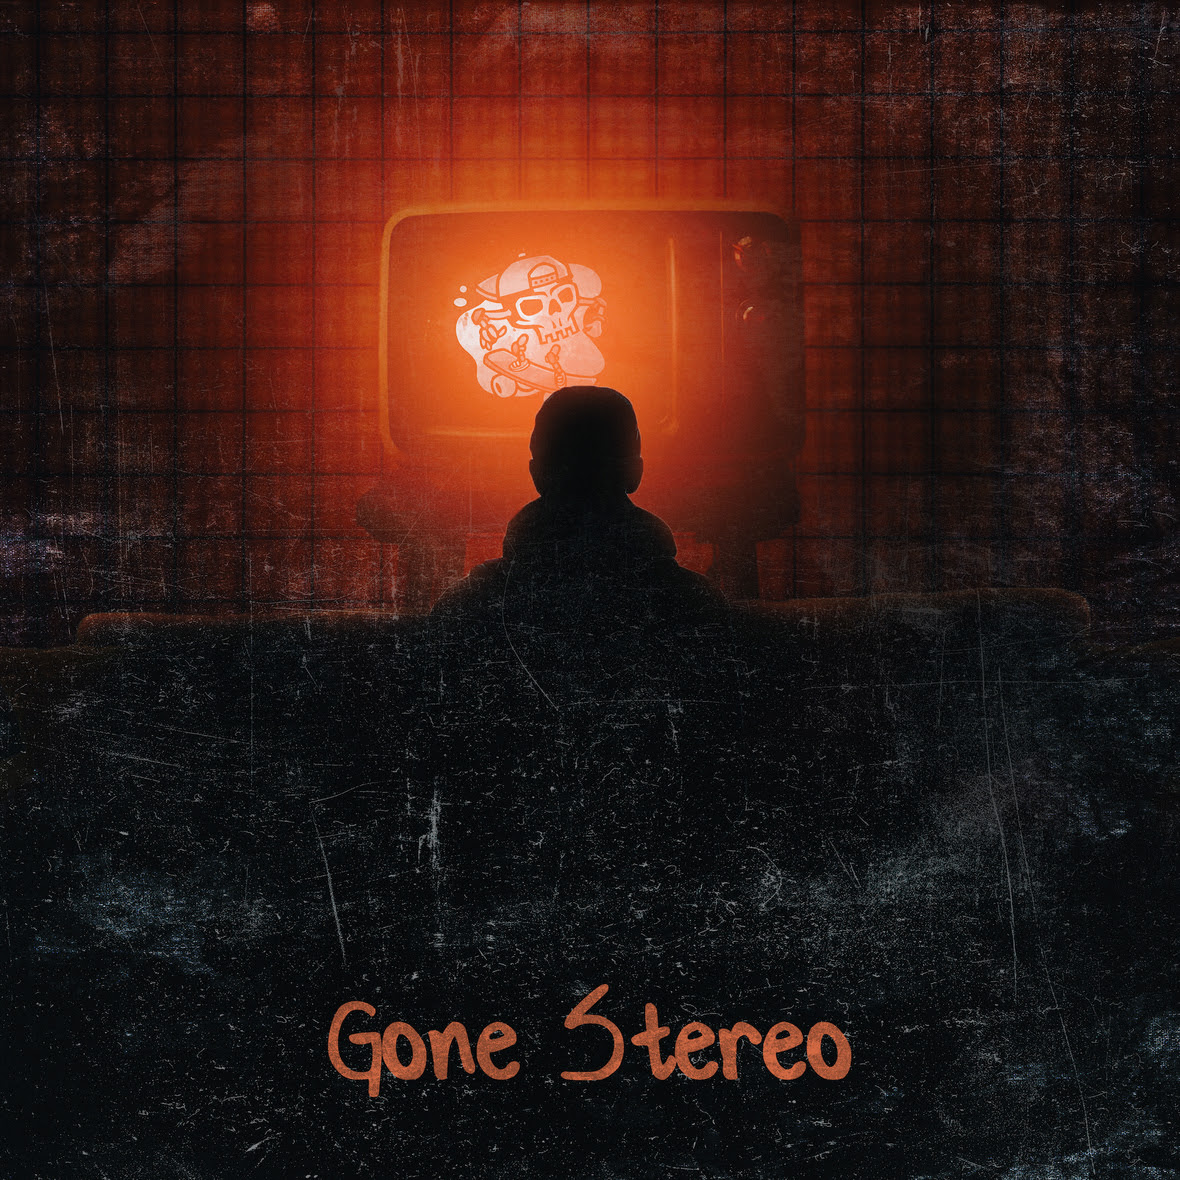 Gone-Stereo cover NPR046medium